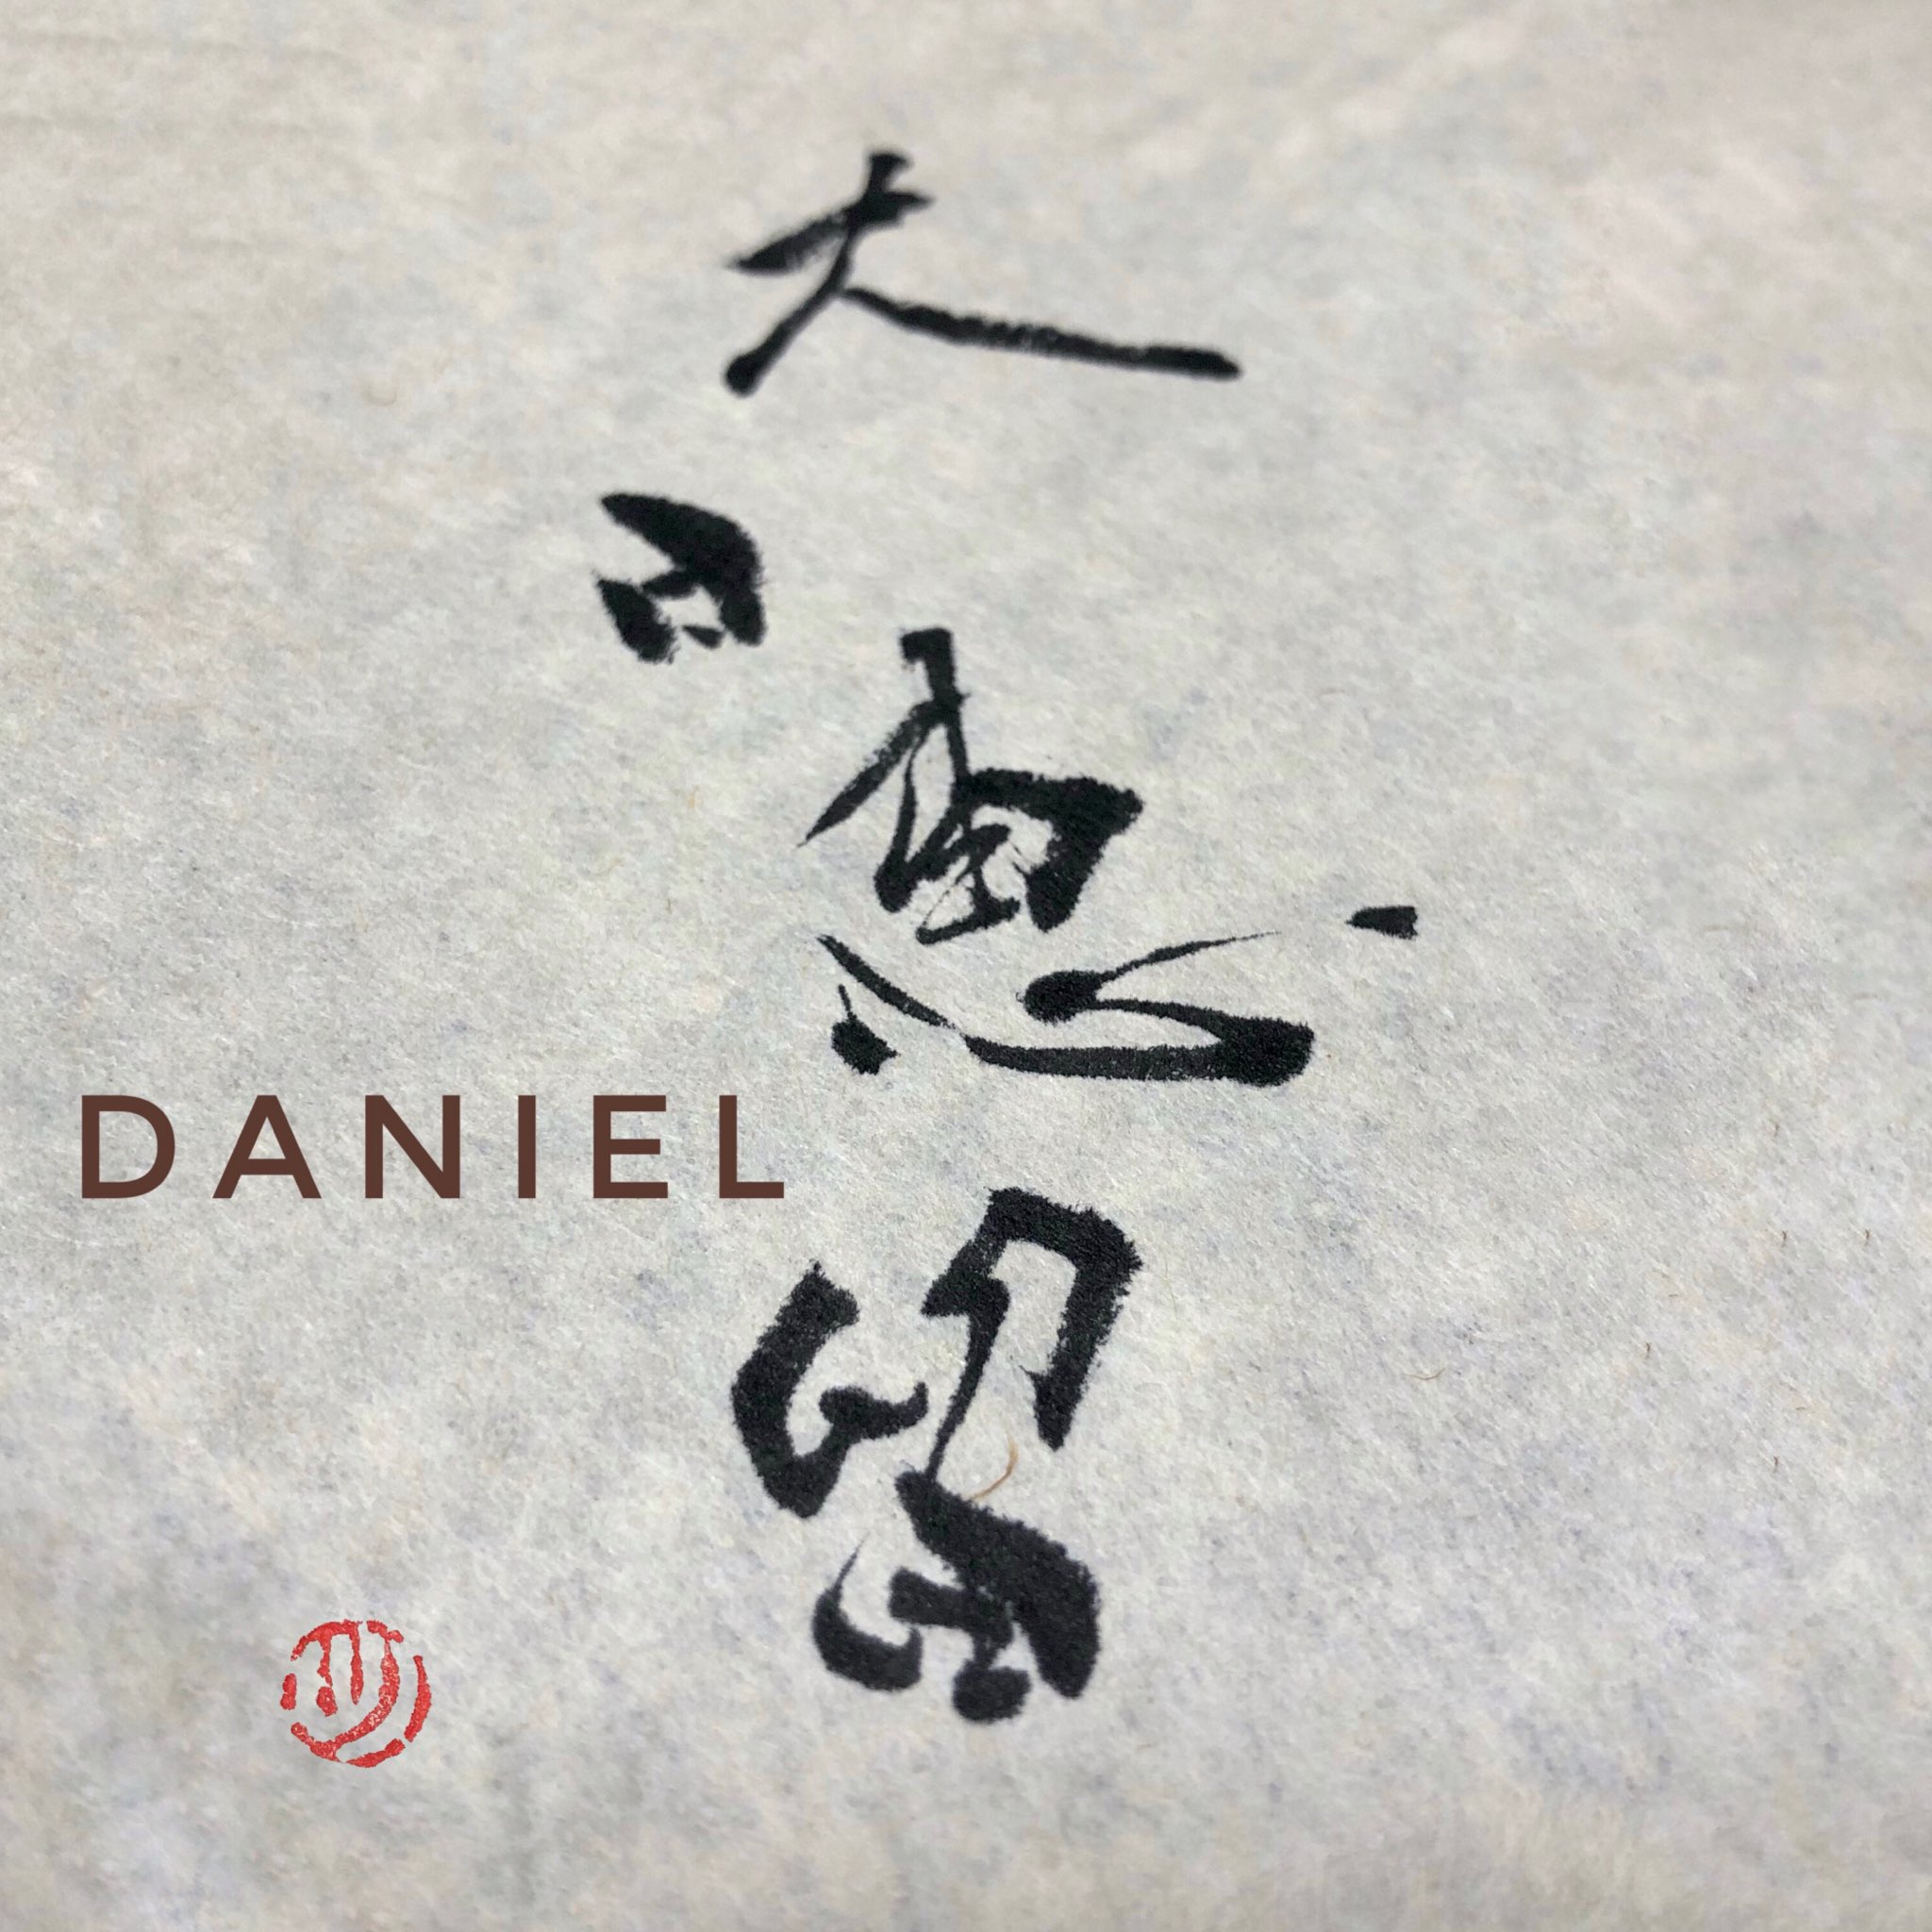 ツっちゃんの手書き筆文字 I M Japanese And Calligraphy Lover I Converted The Foreigner S Name Into Japanese Kanji And Wrote It In Calligraphy This Time I Transformed Daniel Into Japanese Kanji And Calligraphy The